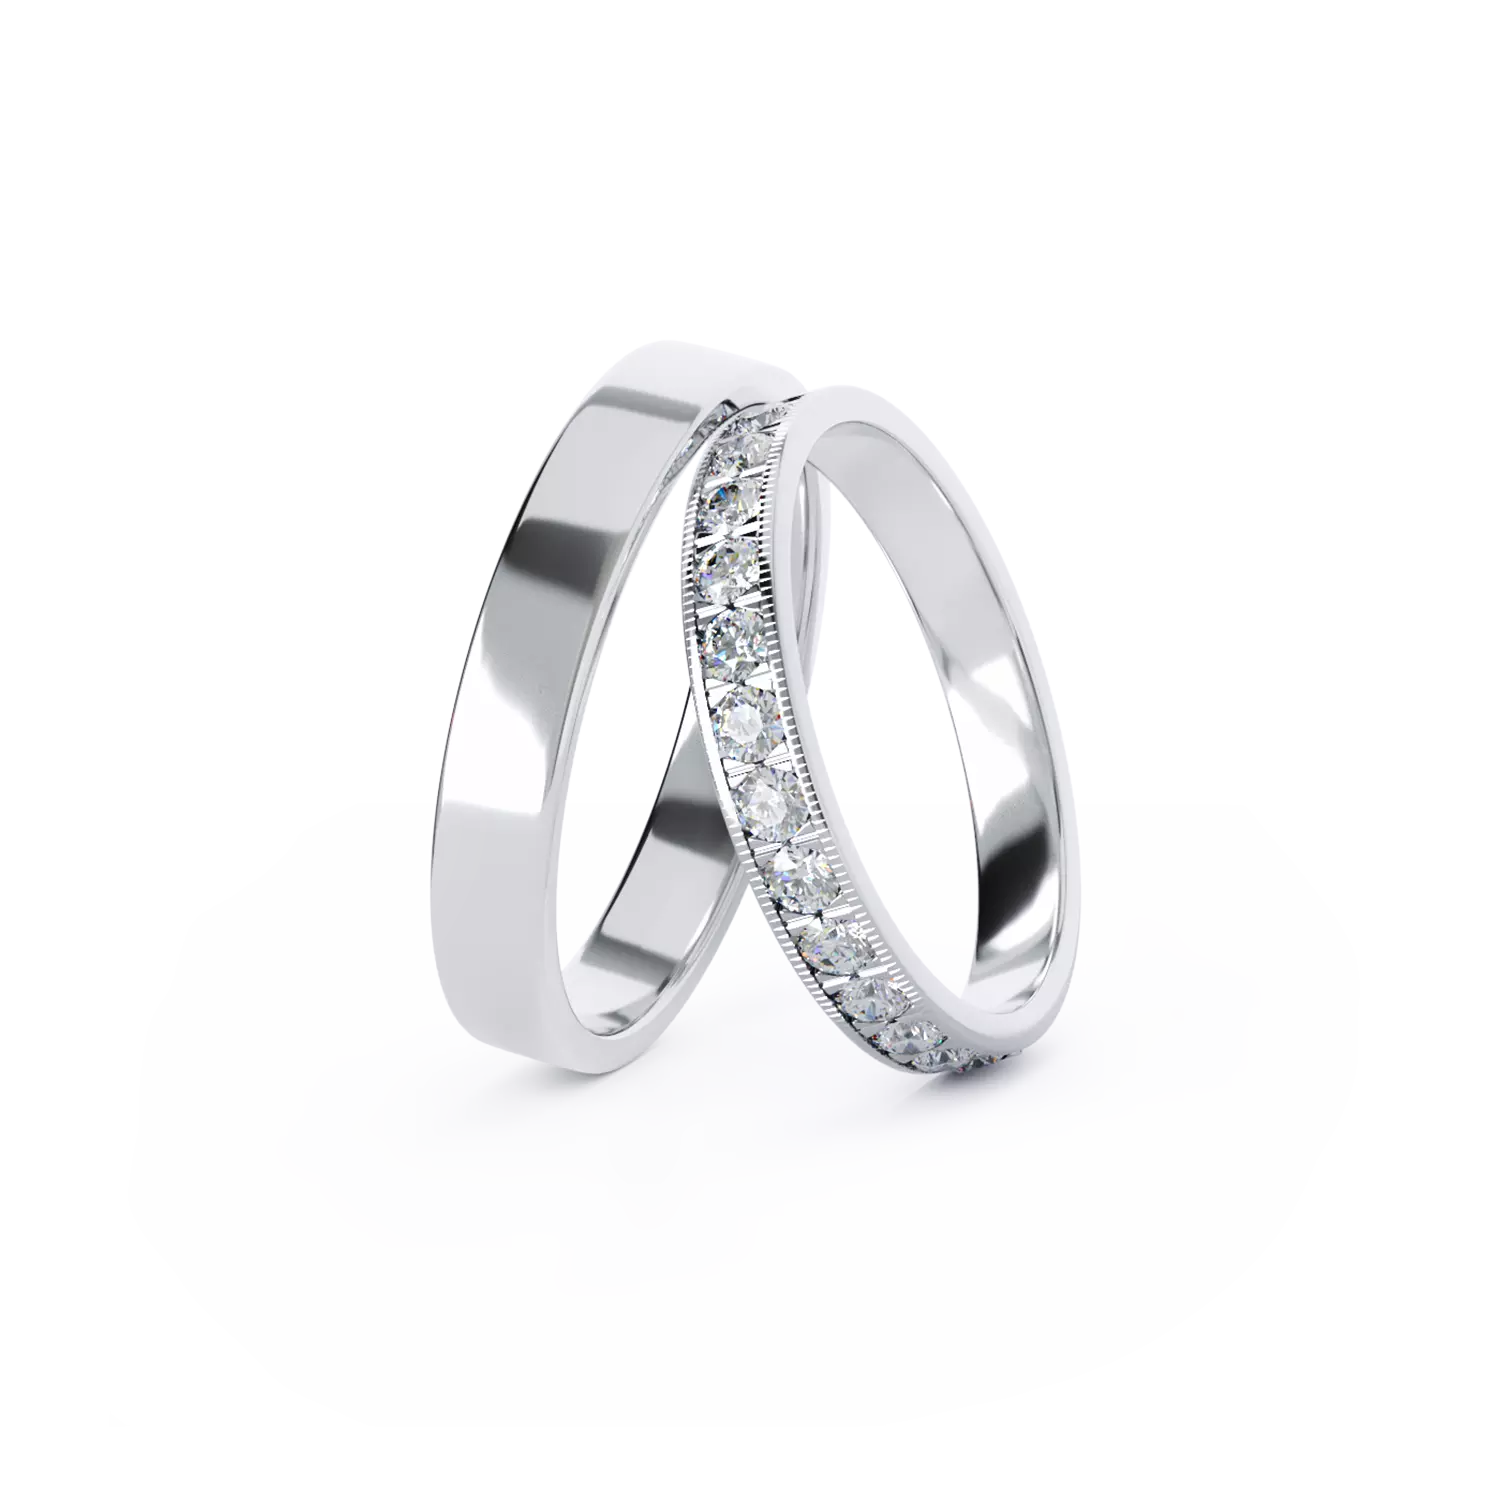 TEI-ABBY arany karikagyűrűk